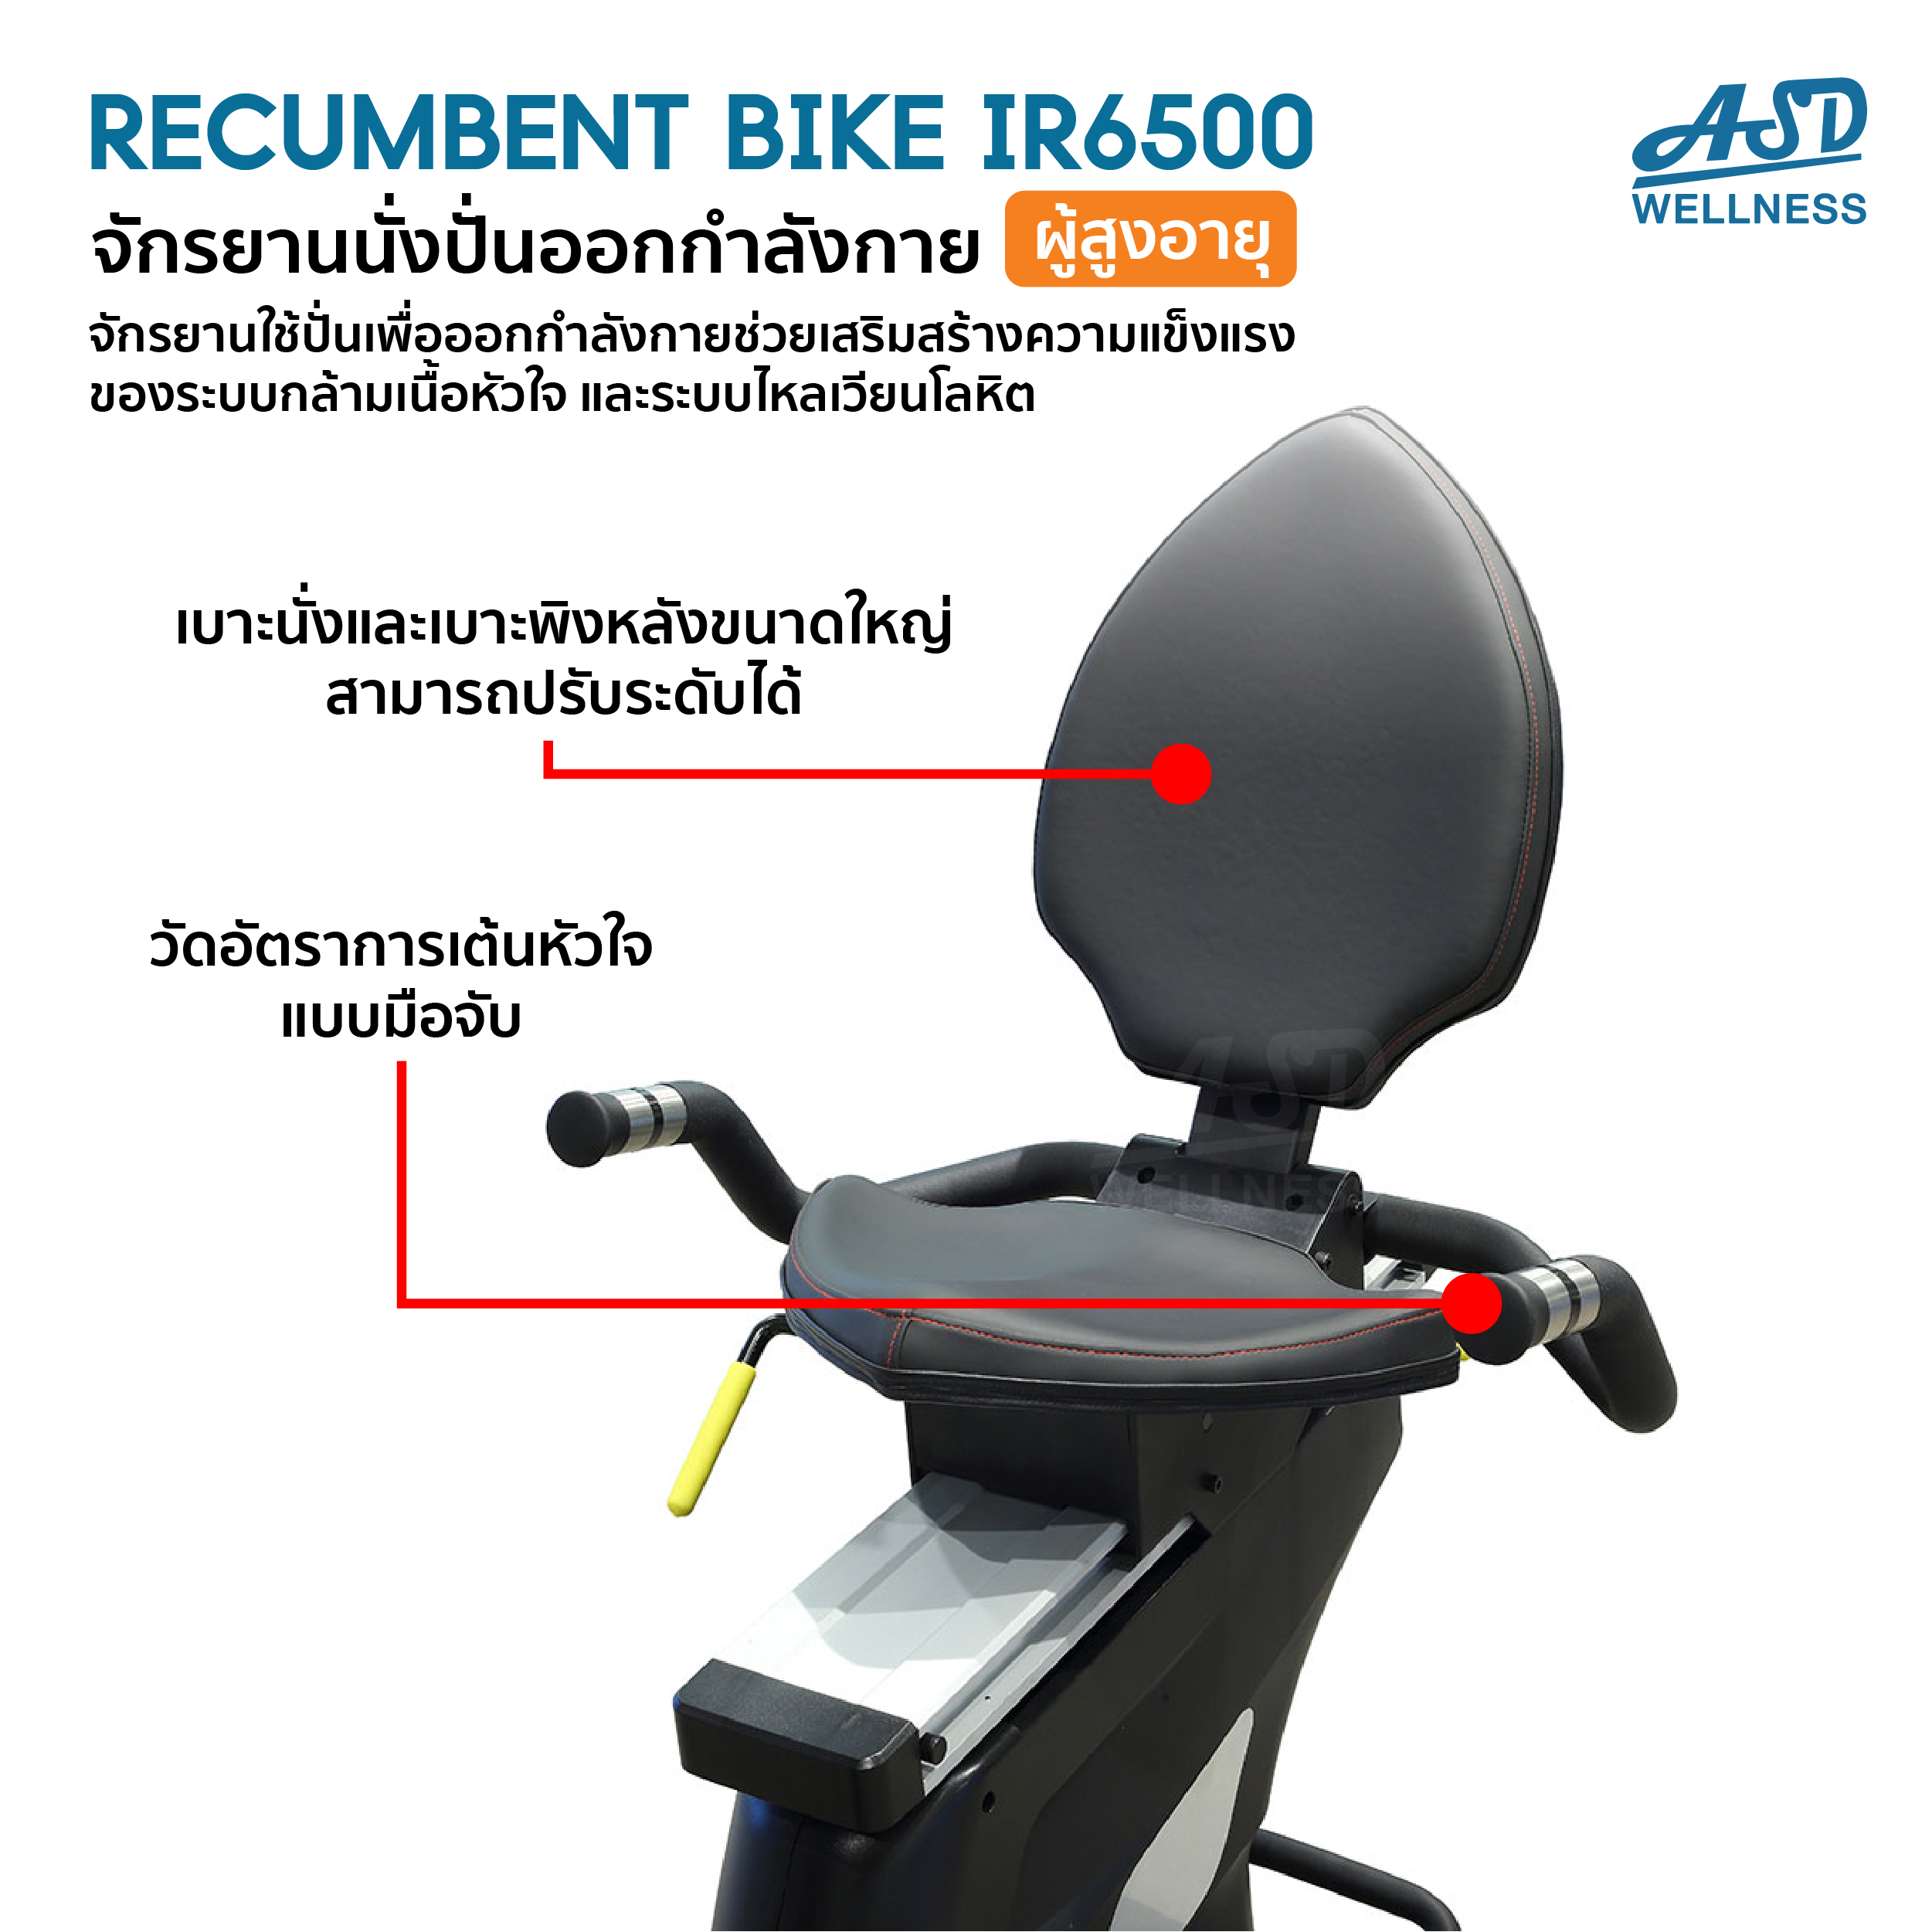 จักรยานนั่งเอนปั่นออกกำลังกาย Recumbent Bike IR6500 สำหรับผู้สูงอายุ